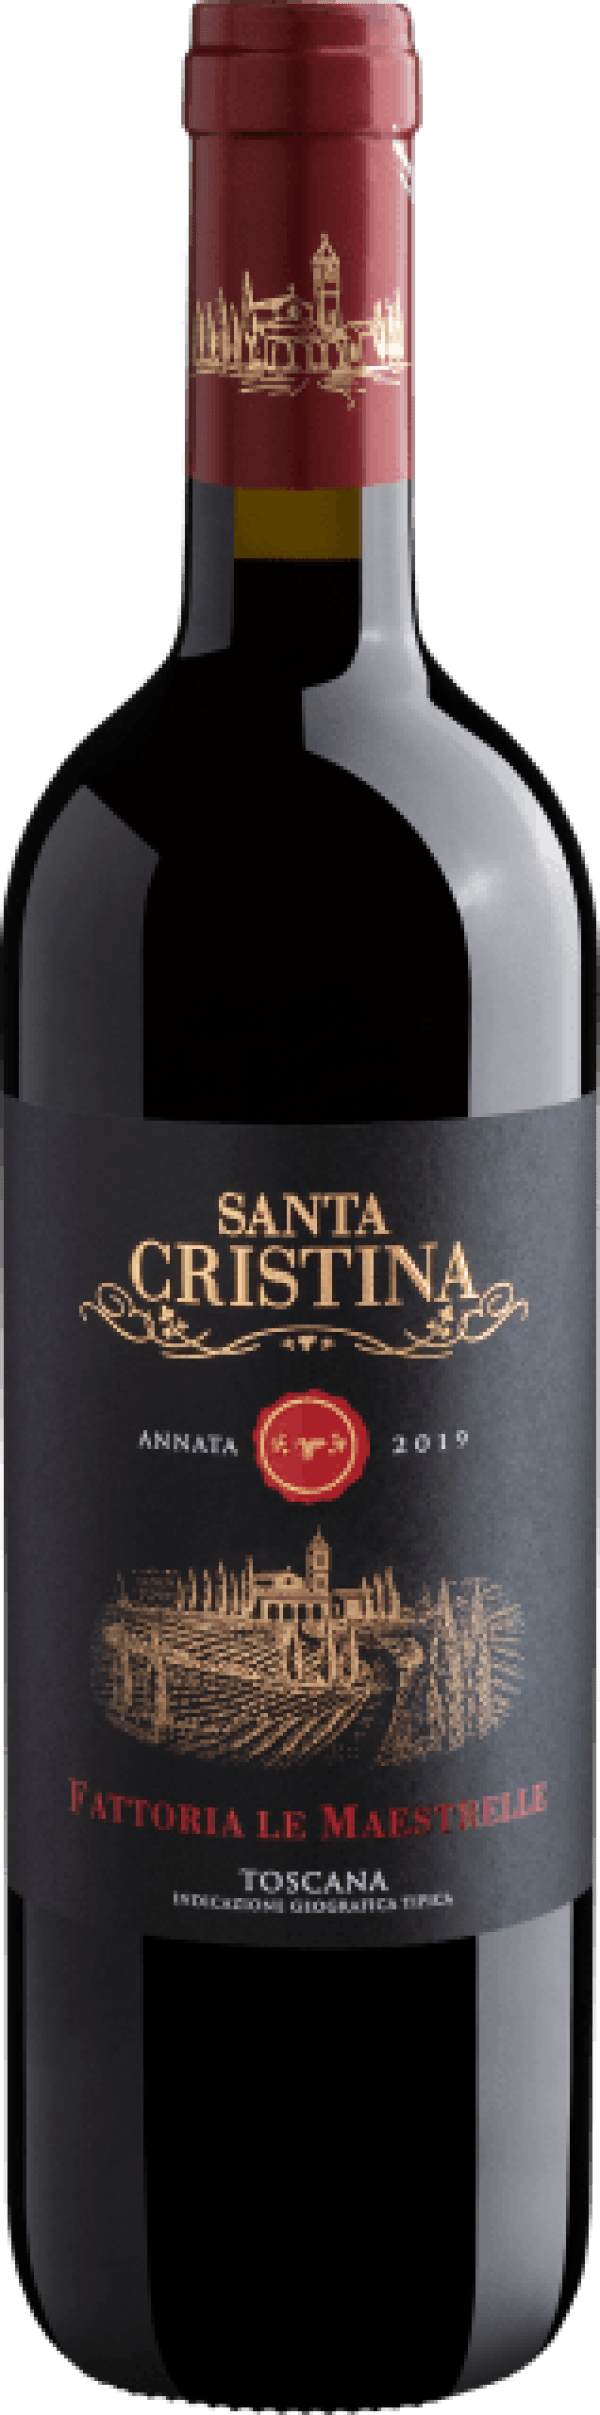 Santa Cristina Fattoria Le Maestrelle Toscana IGT 2019